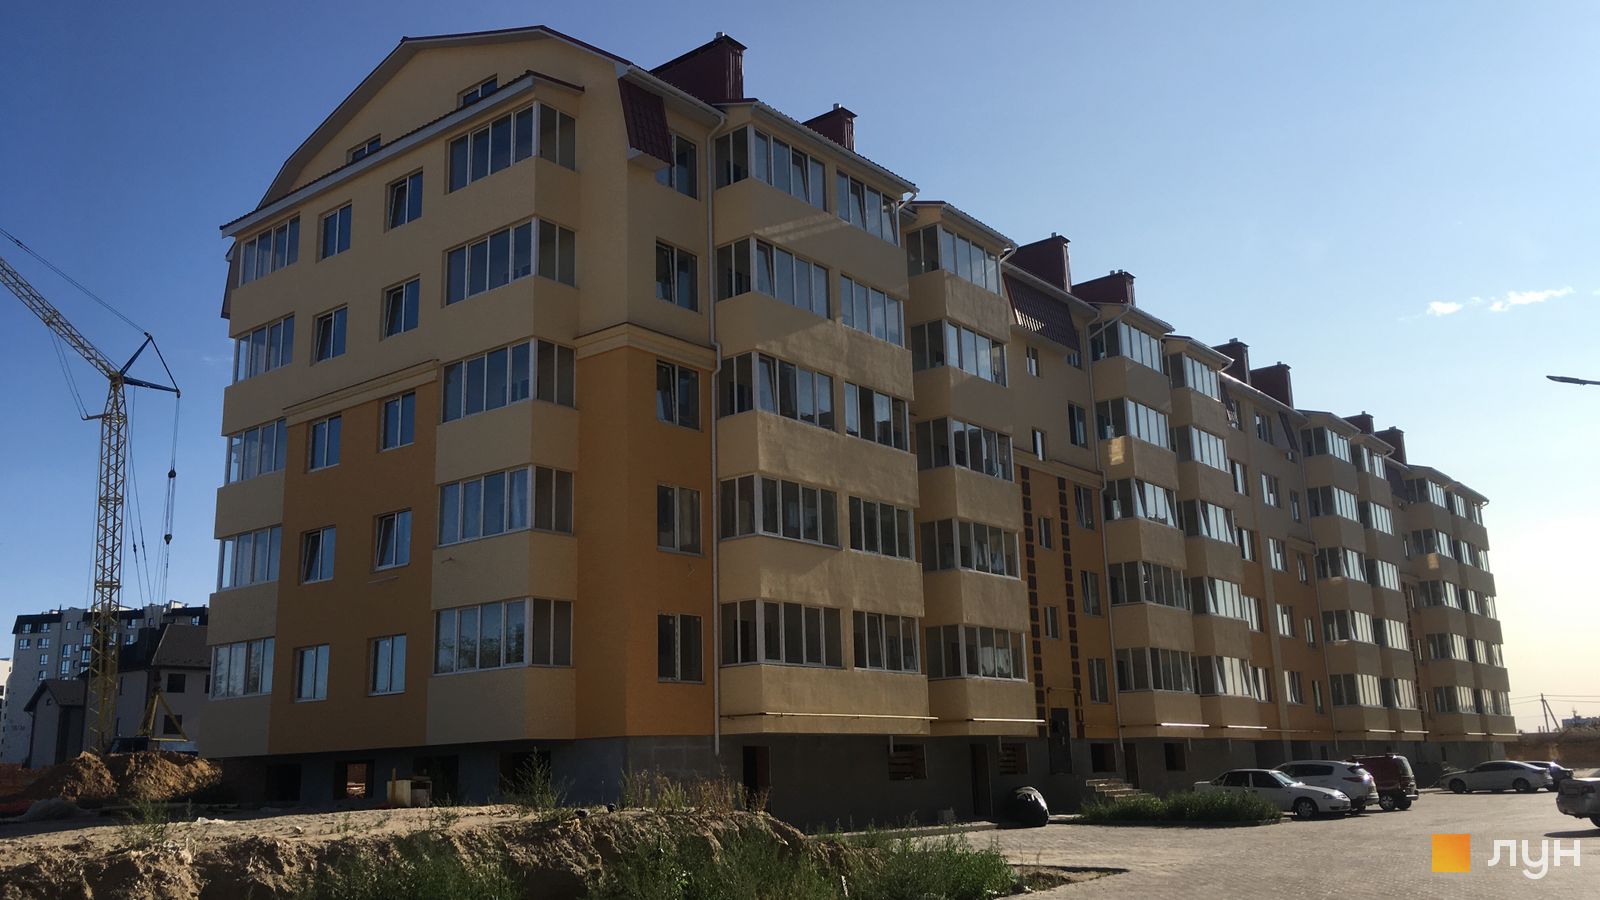 Моніторинг будівництва ЖК Київський маєток - Ракурс 14, сентябрь 2020